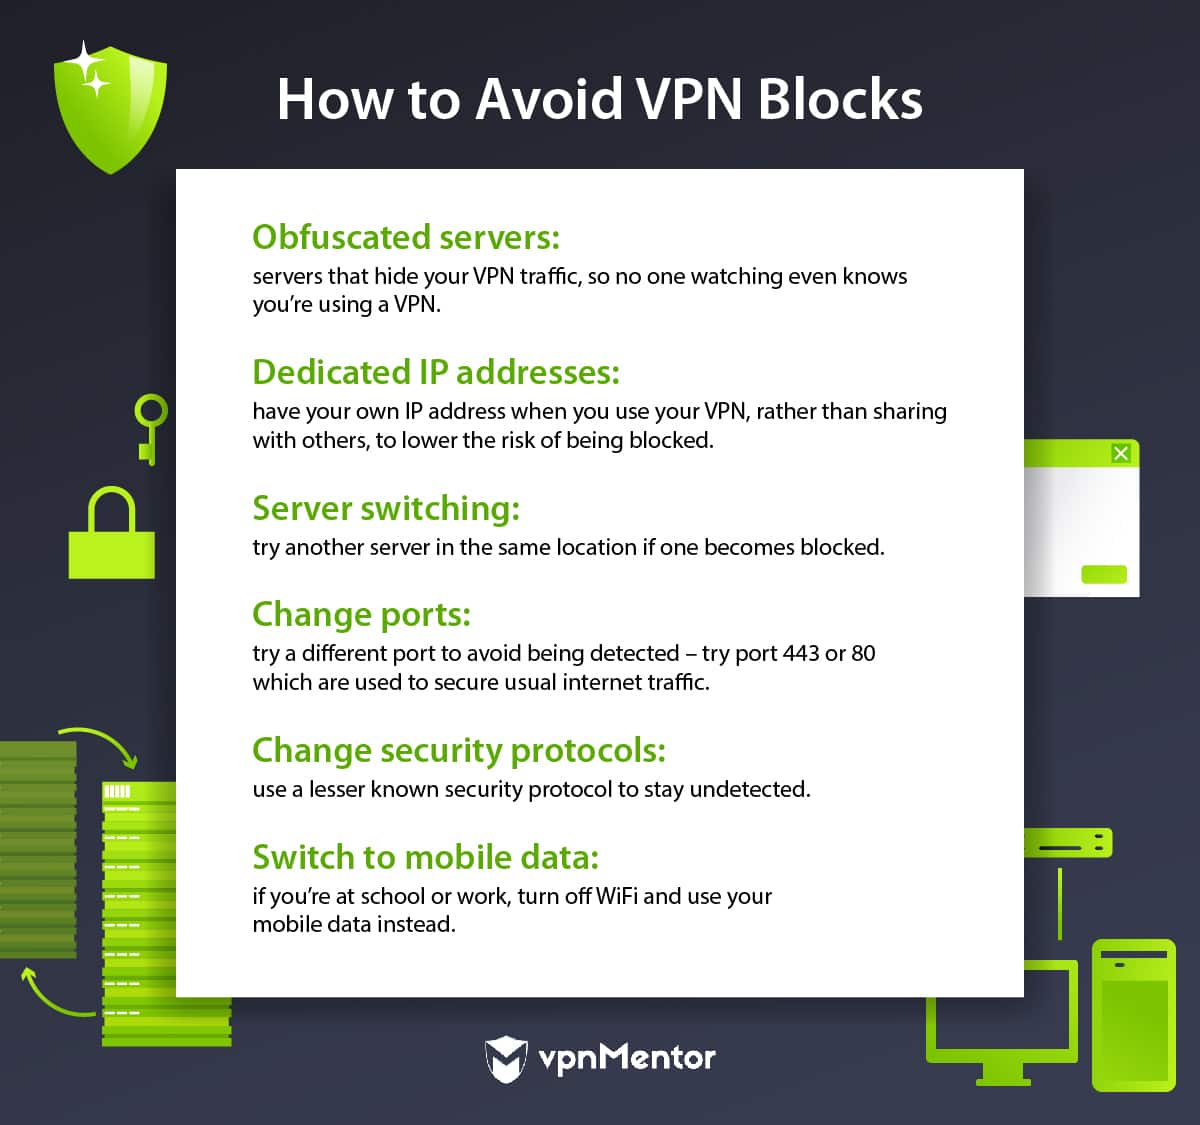 How to avoid VPN blocks